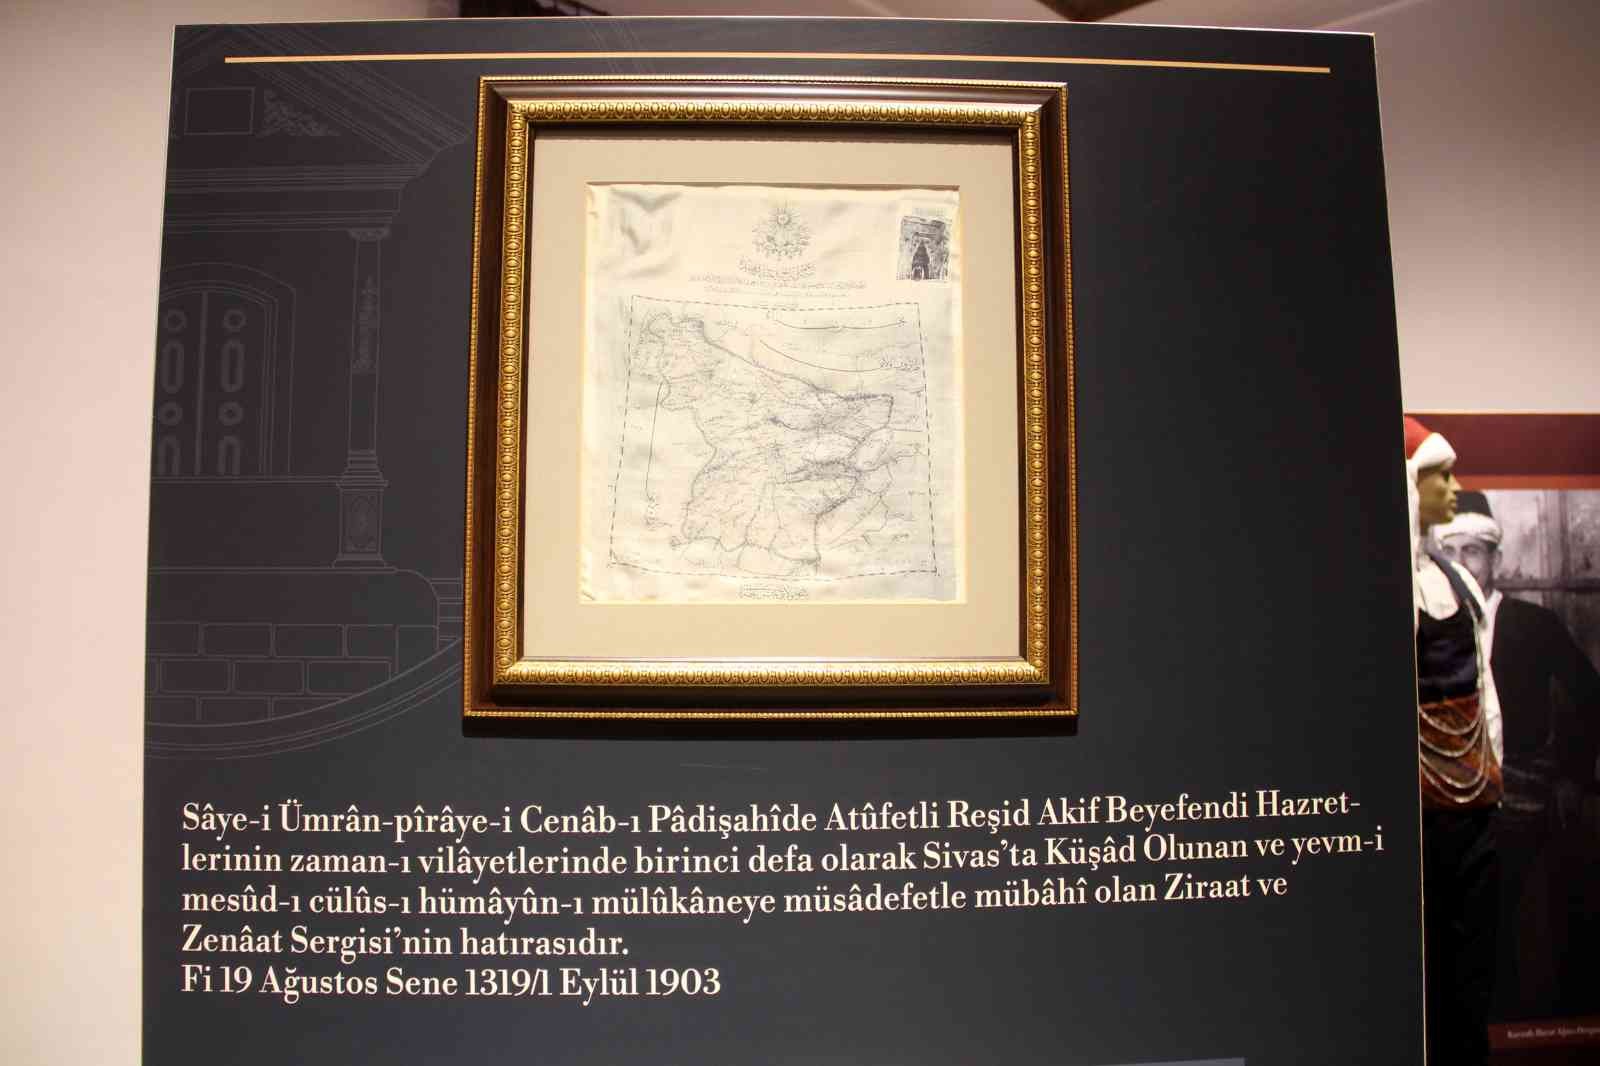 Viyana’da basıldı,117 yıllık ipek harita Sivas’ta sergileniyor #sivas